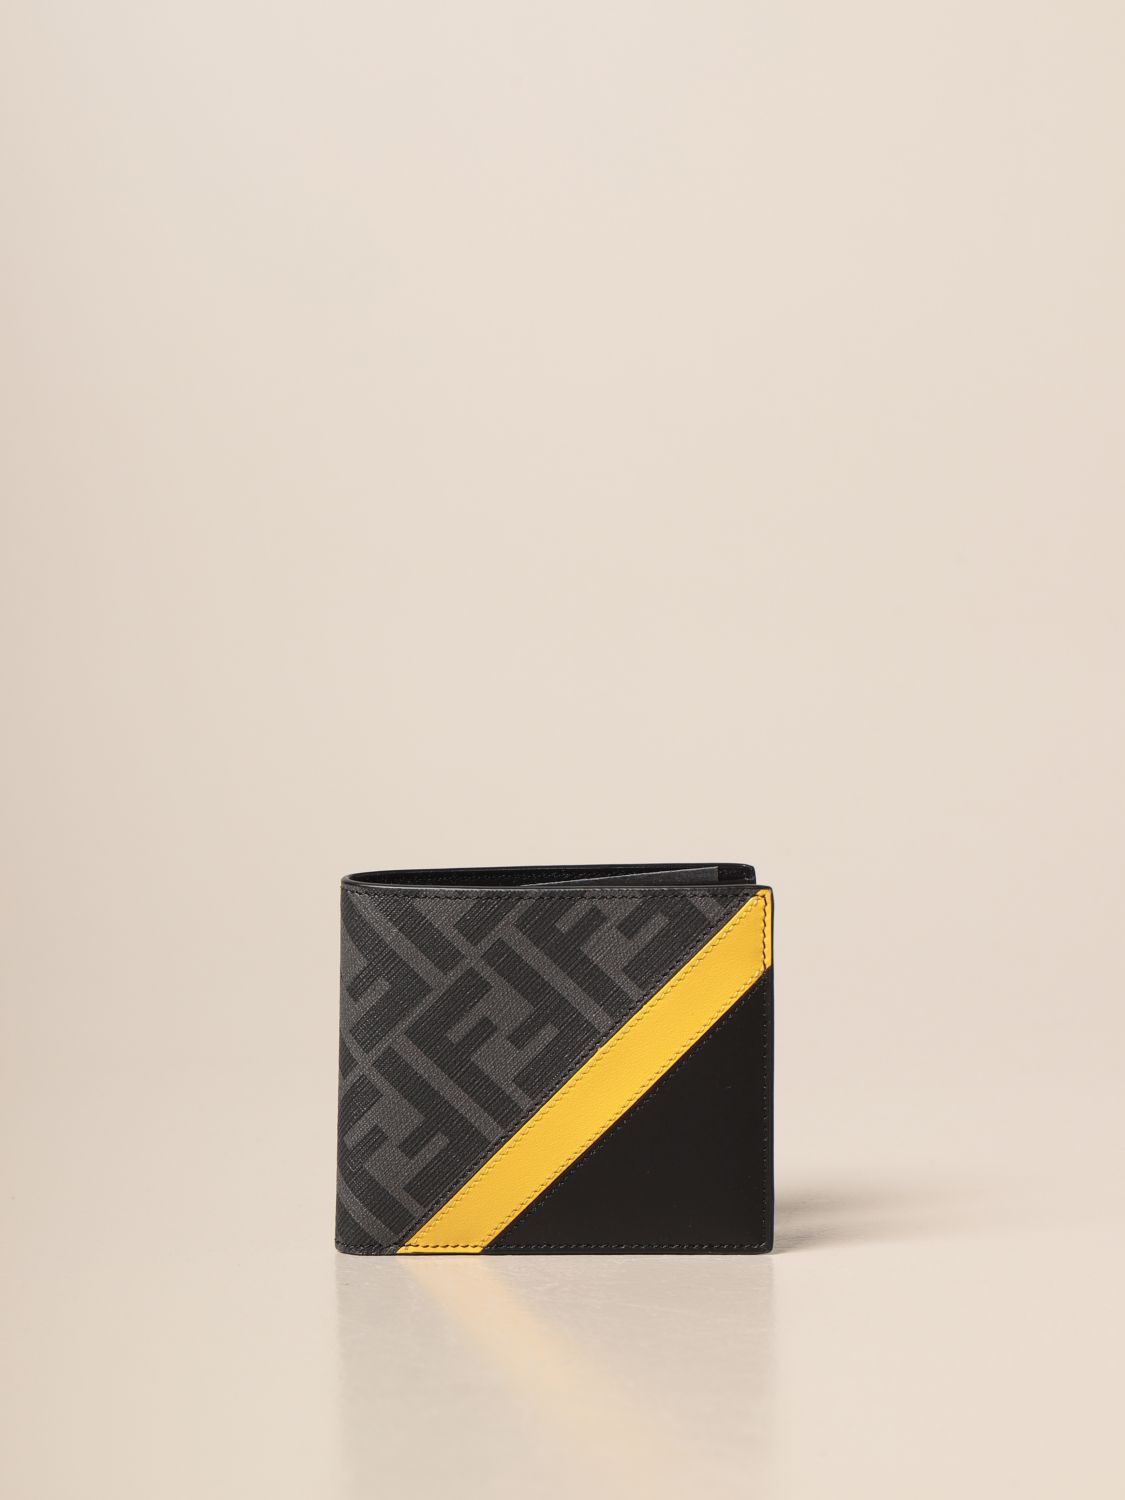 fendi leather wallet